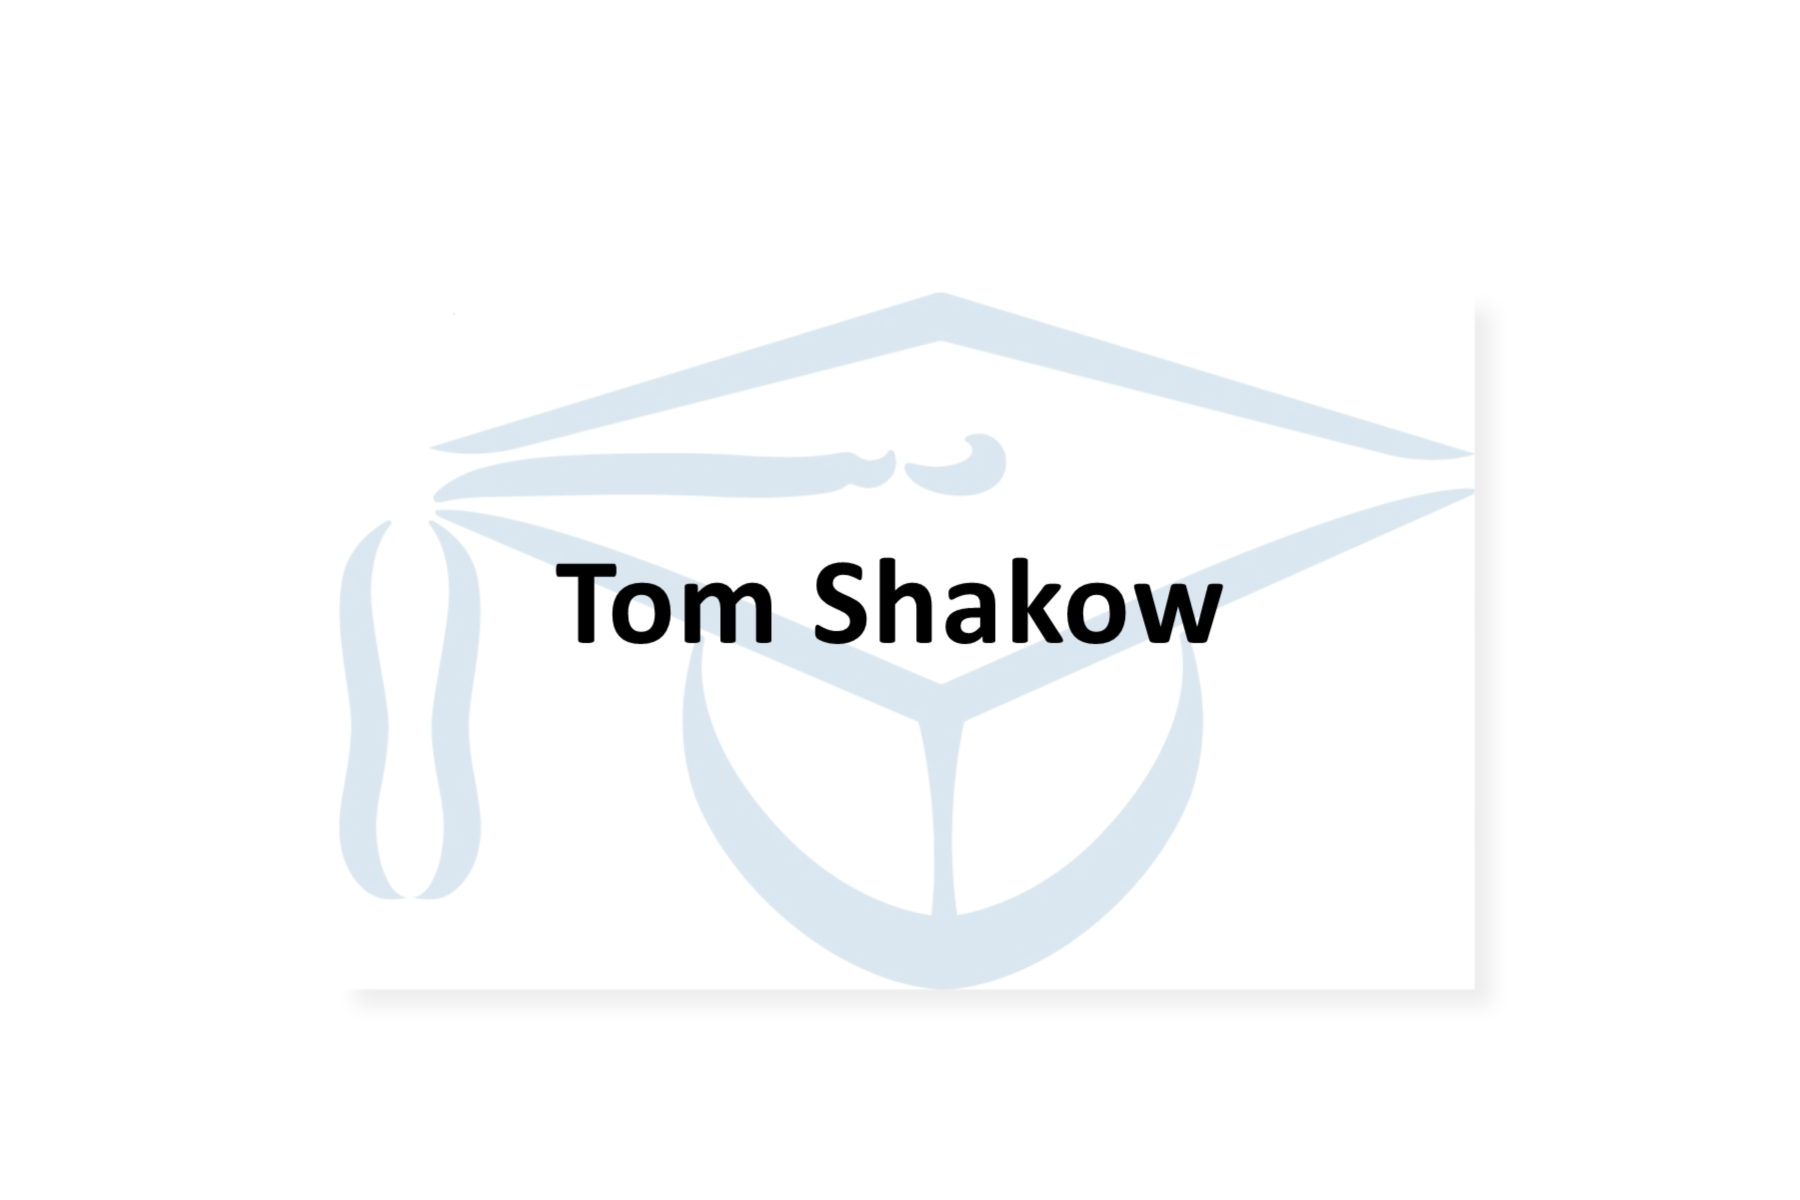 Tom Shakow